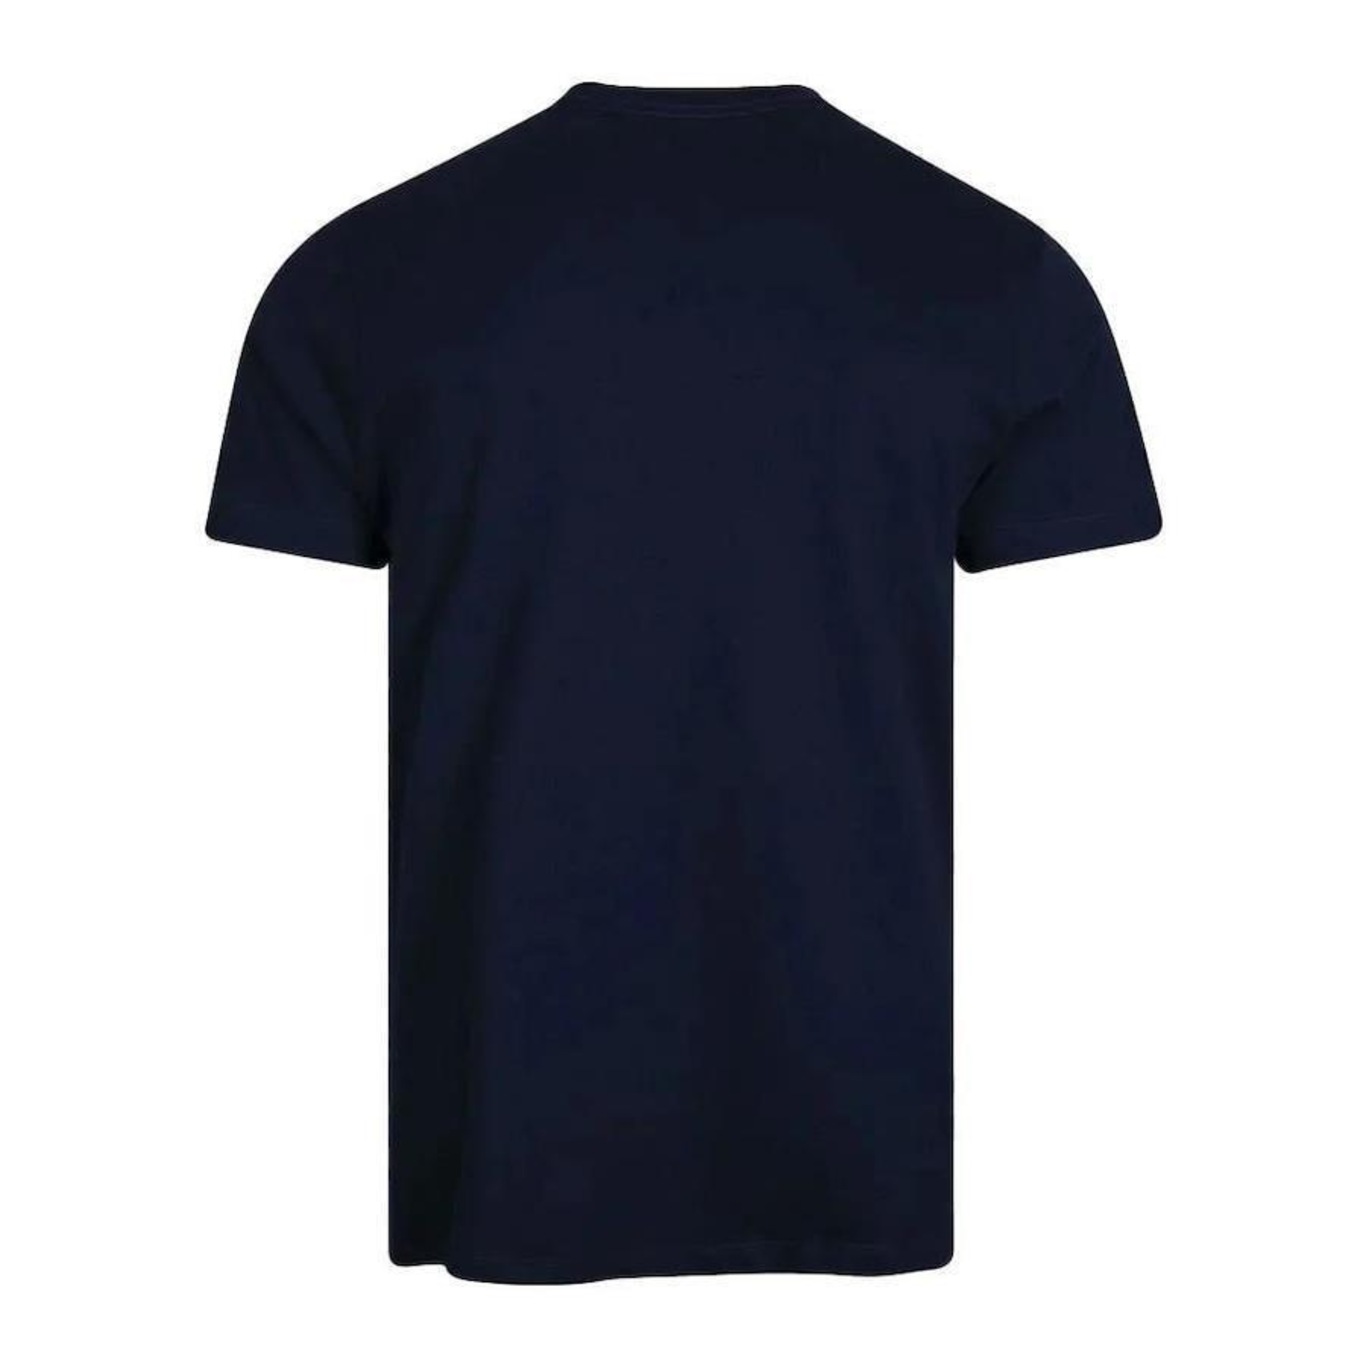 Camiseta Champion Logo Navy Azul - Compre Agora